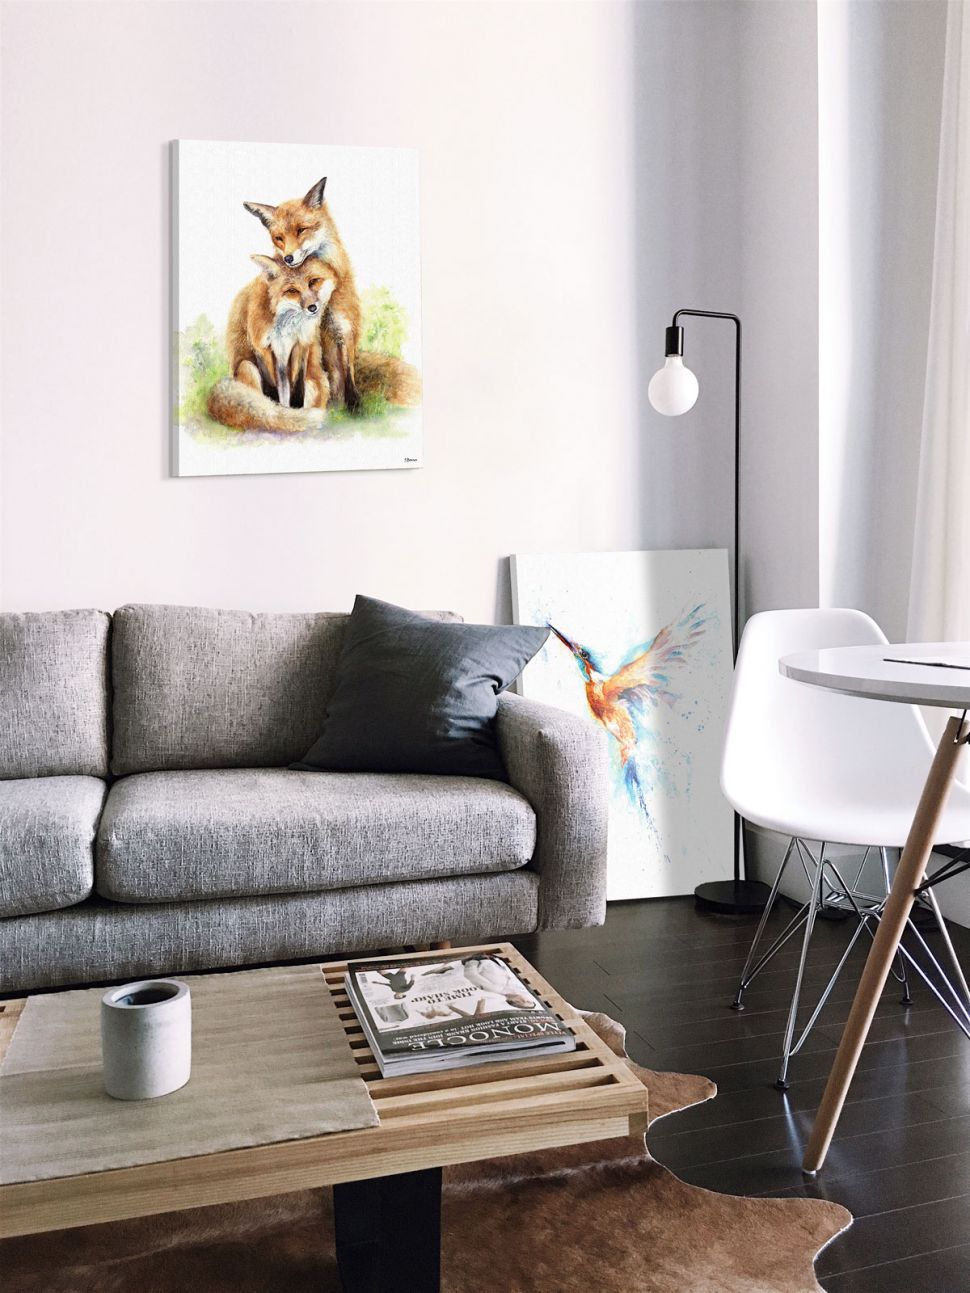 Obraz z zakochanymi lisami w salonie nad szarą kanapą i obrazem z kolorowym kolibrem